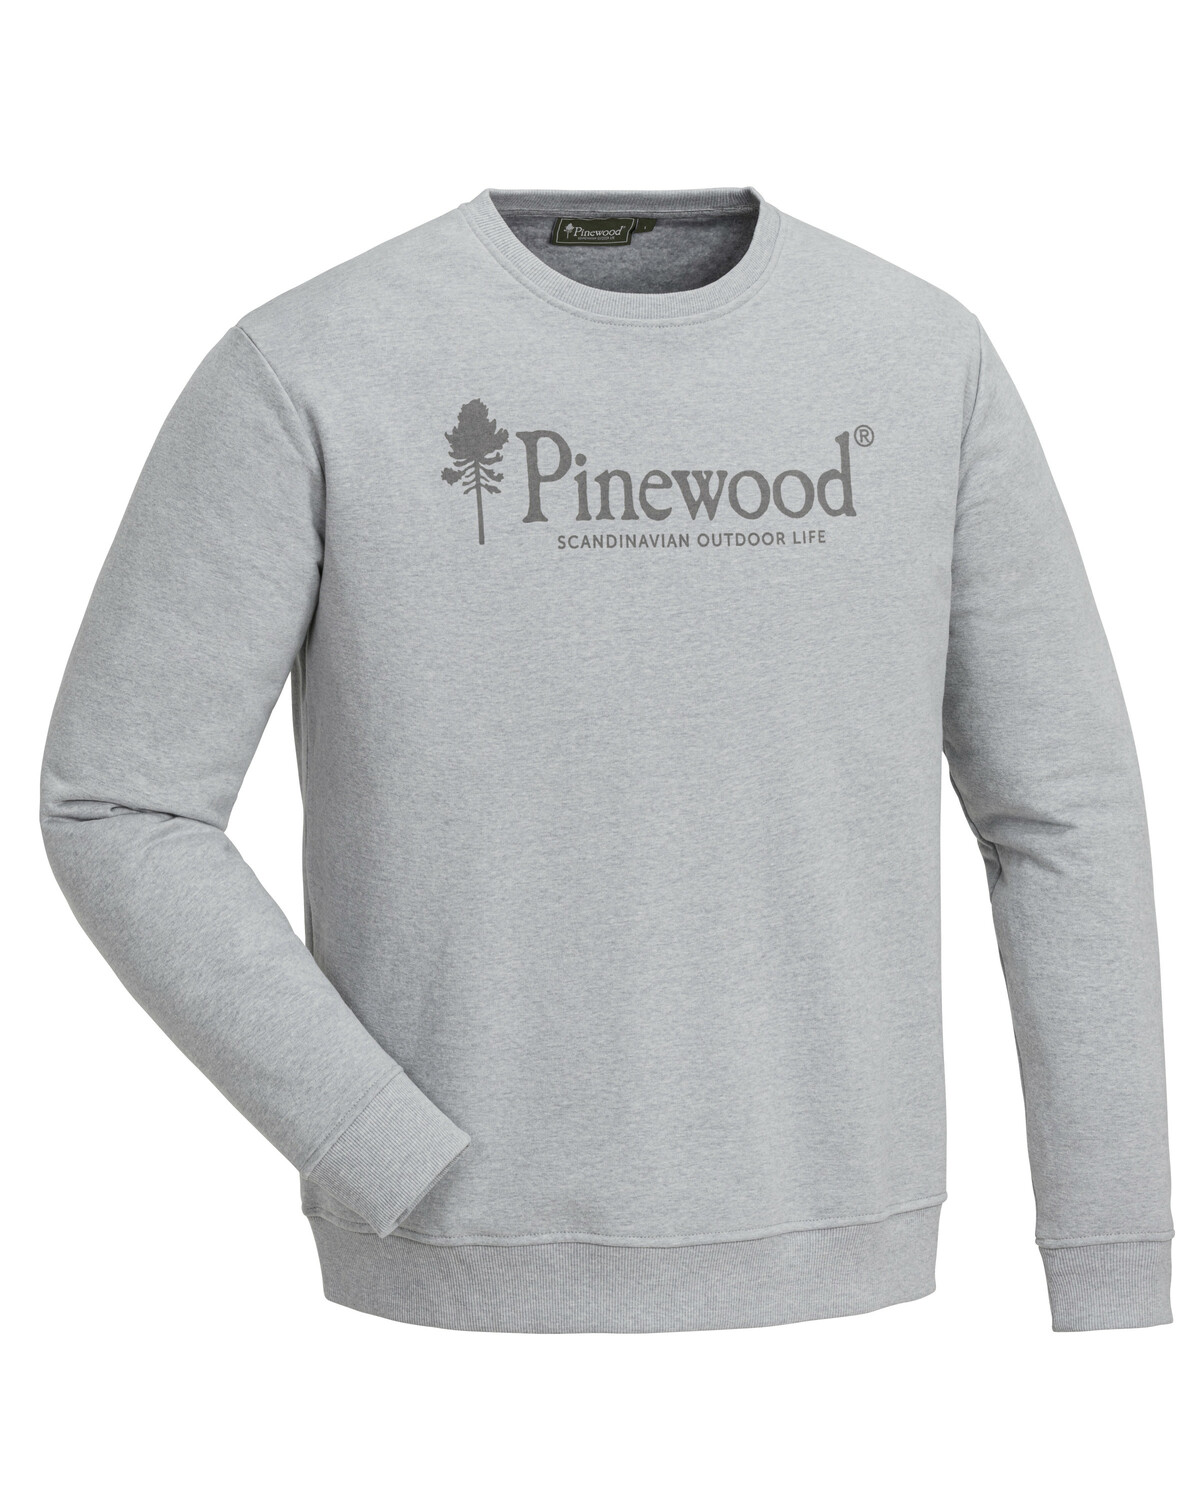 Свитер SUNNARYD Pinewood 5778-454